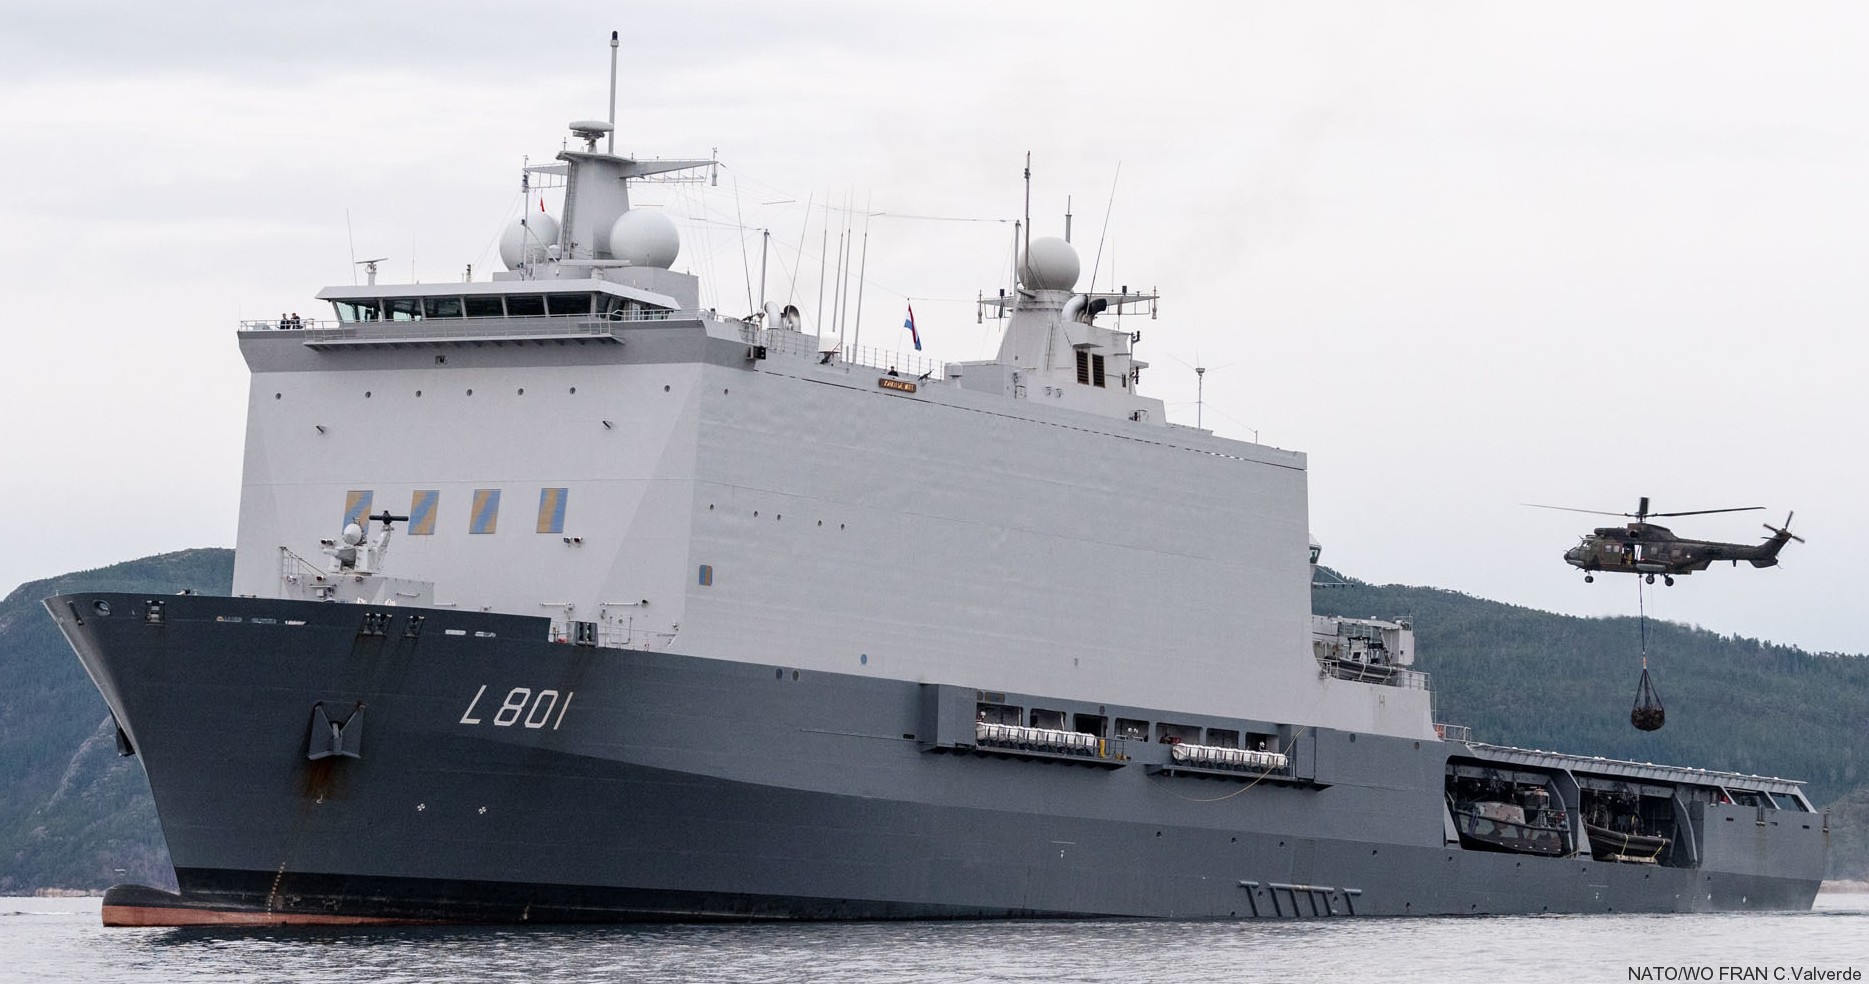 l-801 hnlms johan de witt amphibious ship landing platform dock lpd royal netherlands navy 18 nato